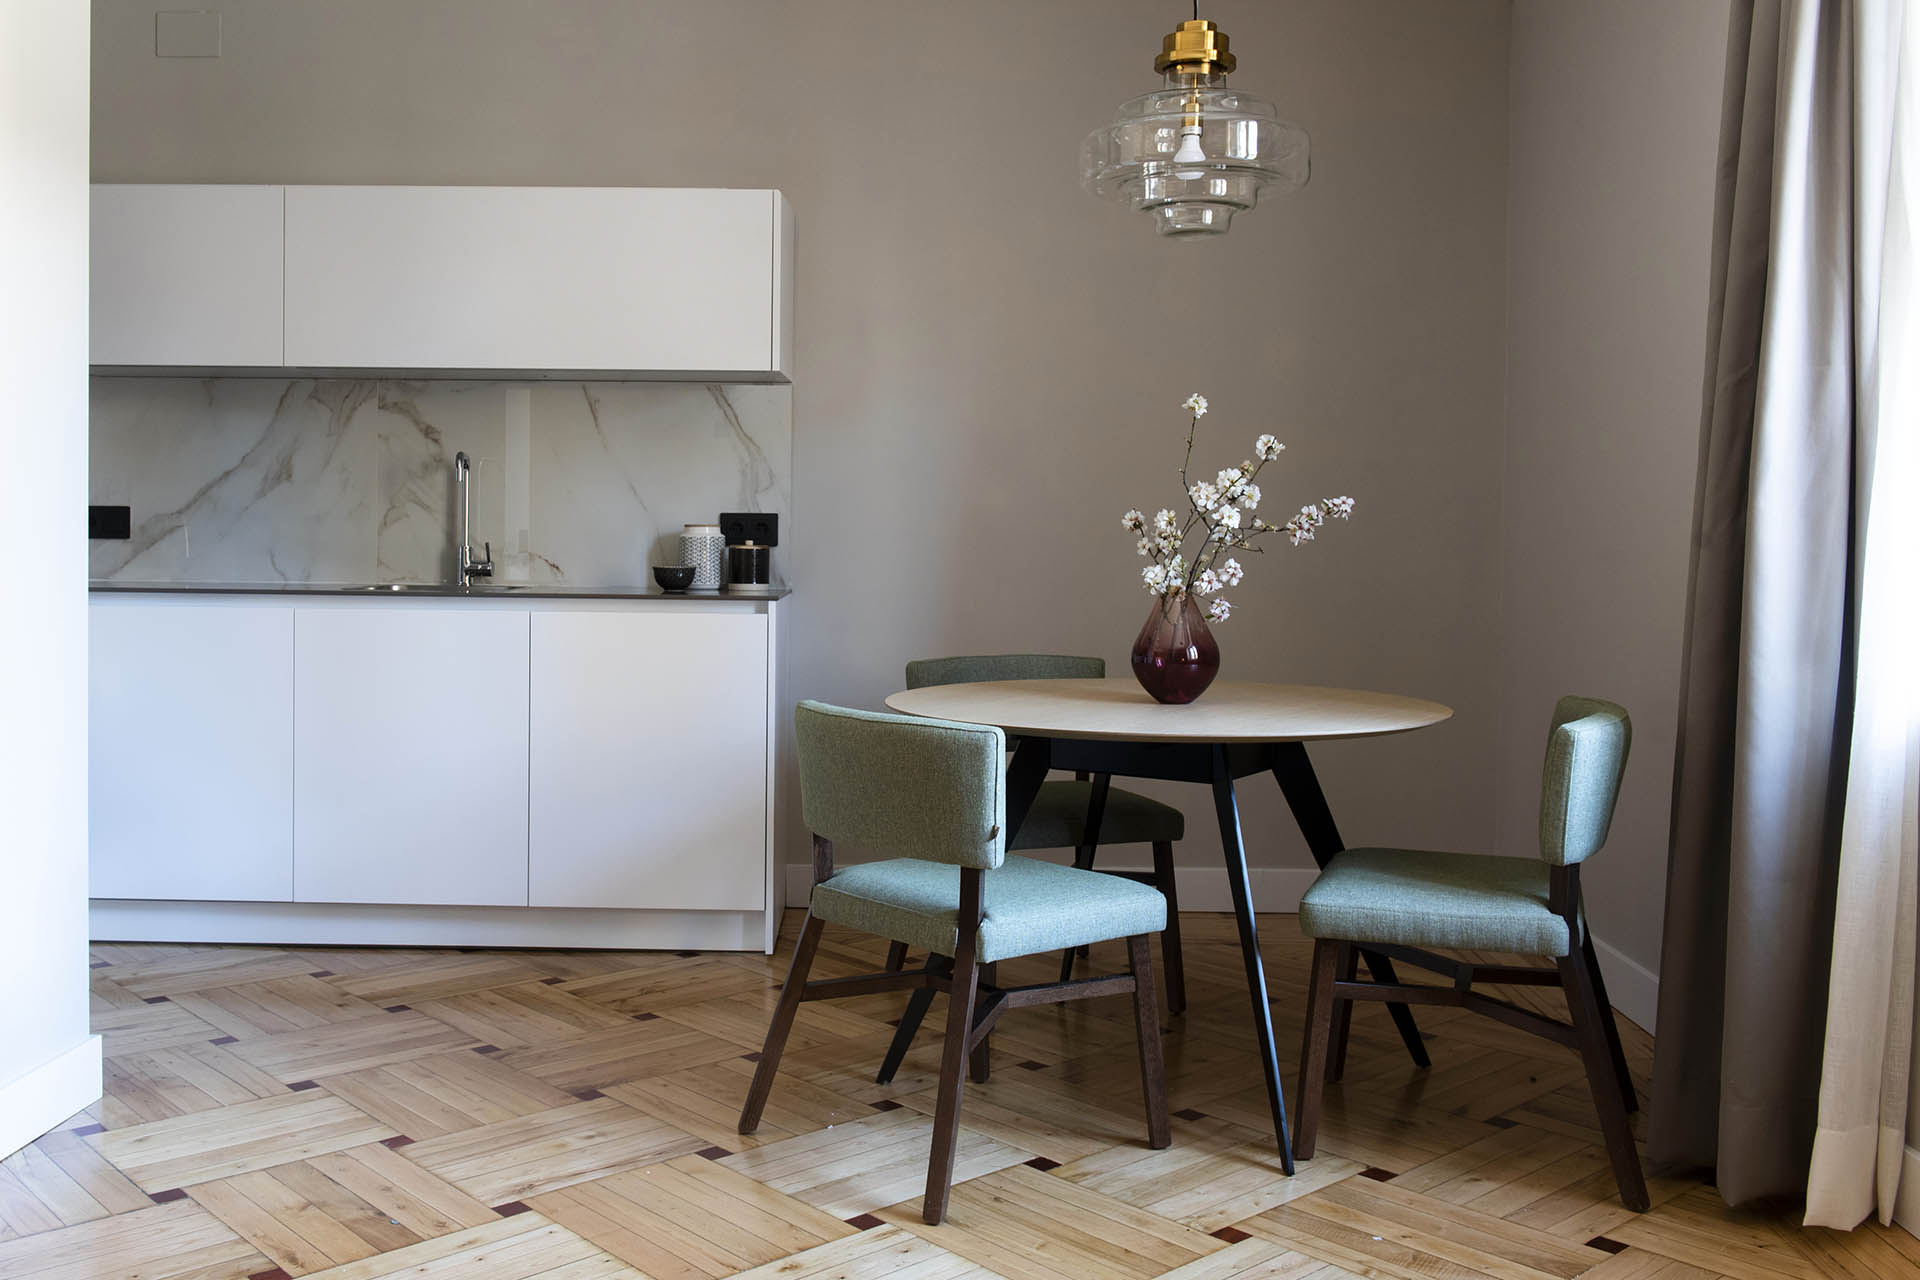 Cozinhas Santos em apartamentos turísticos, pela designer Ana Montarelo